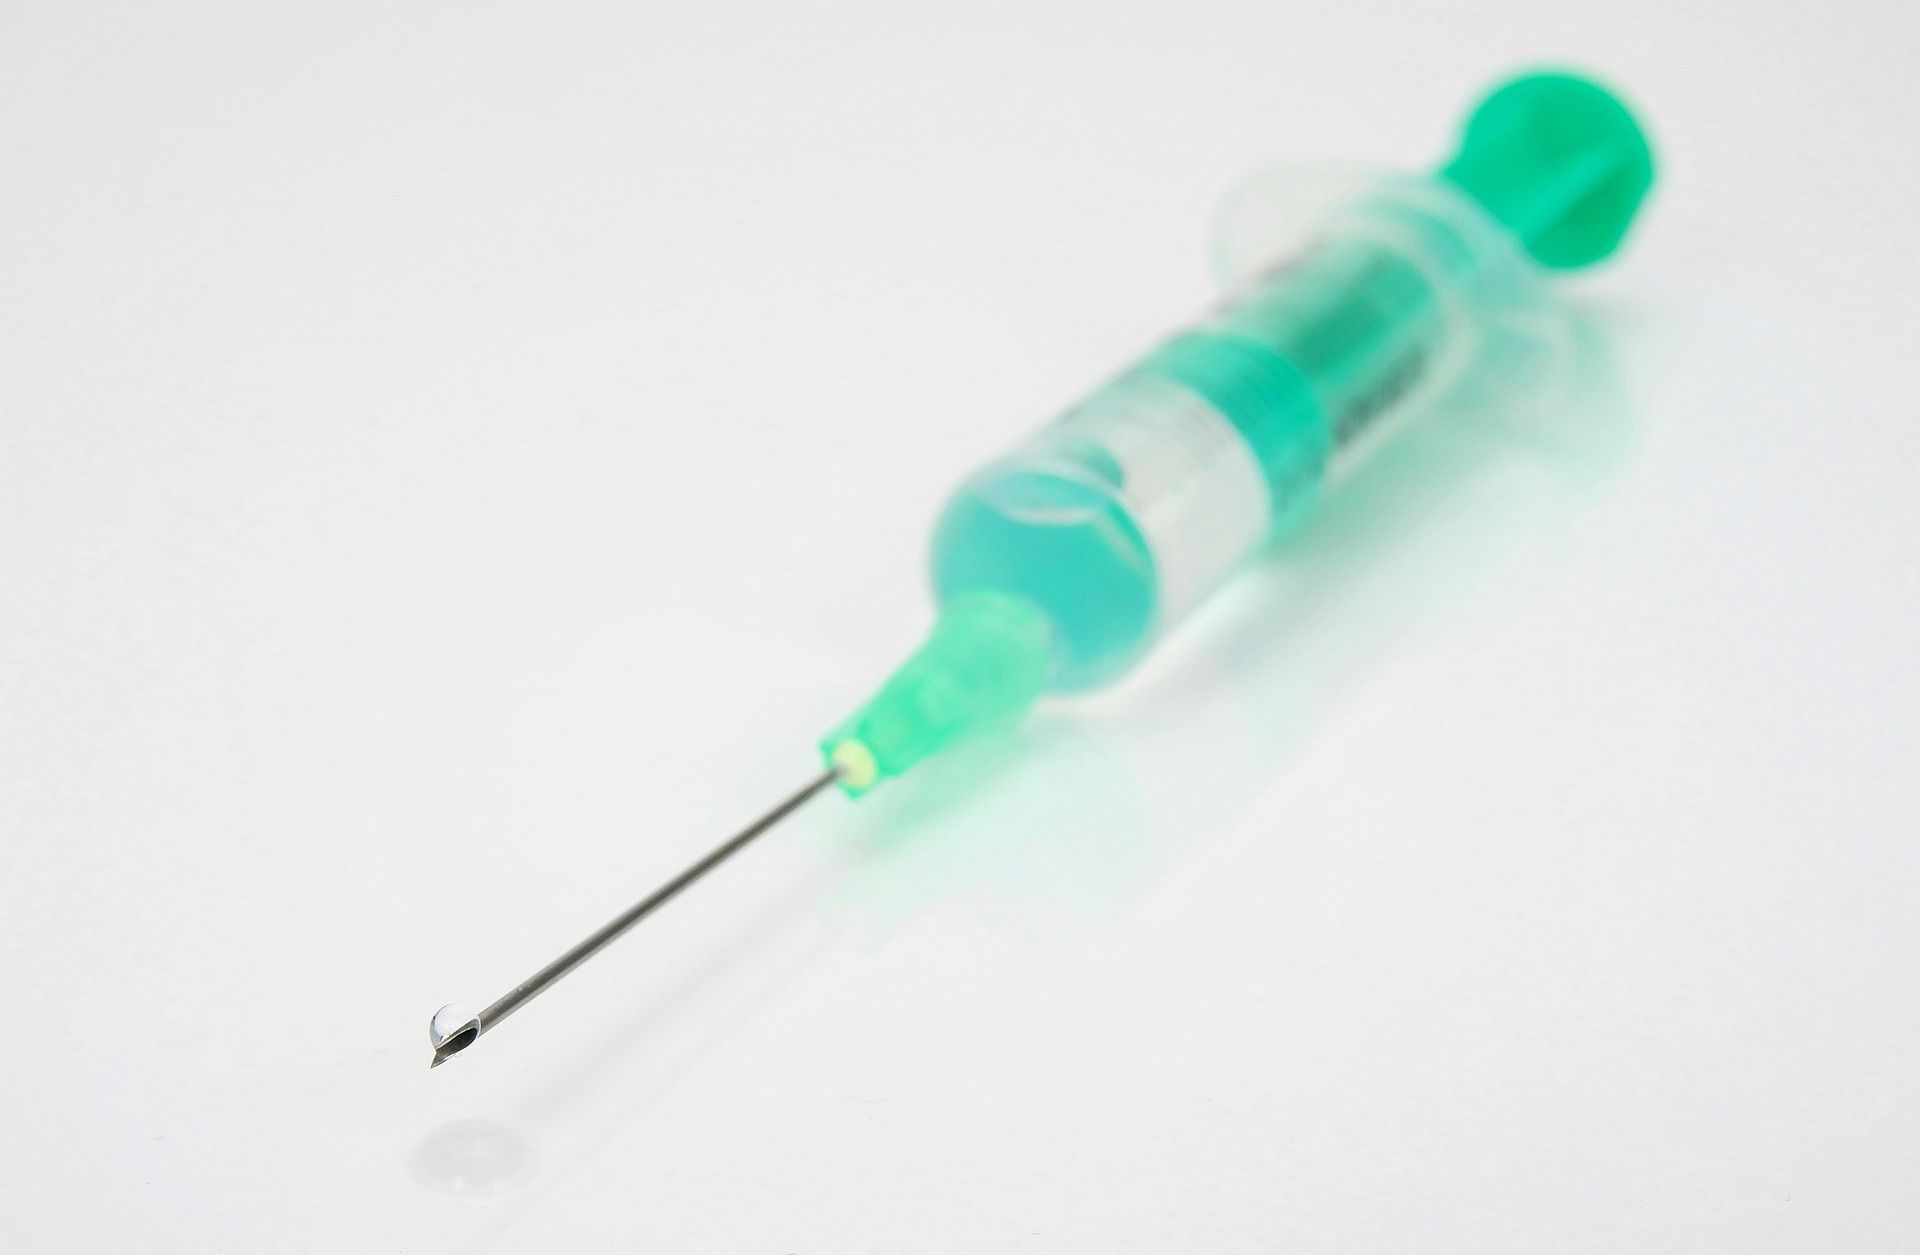 Elítéltek egy orvost, aki ellenőrizetlen anyagot injekciózott páciensébe